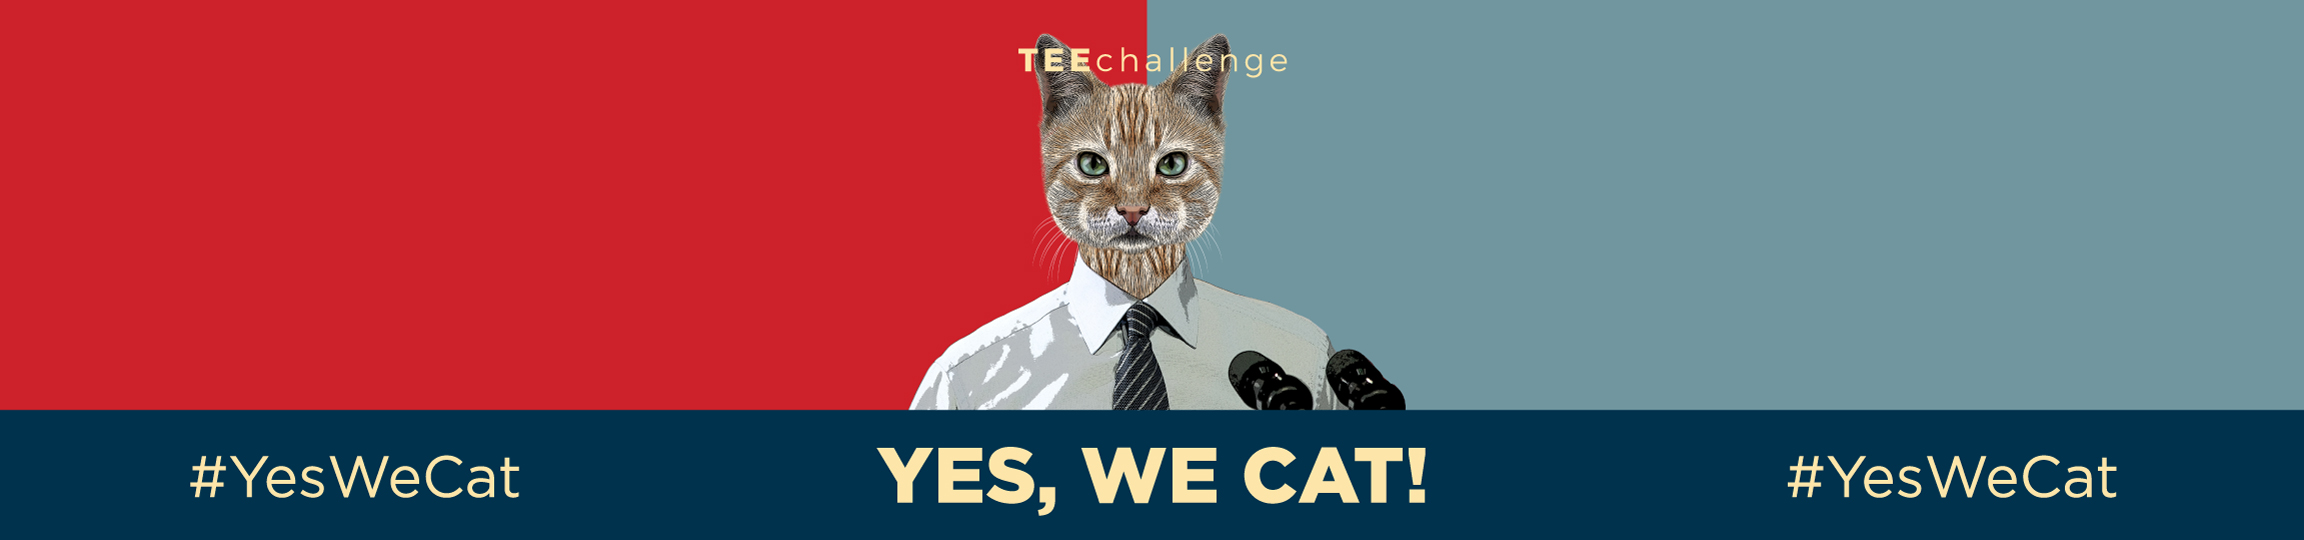 Teechallenge YES WE CAT Banner Desktop